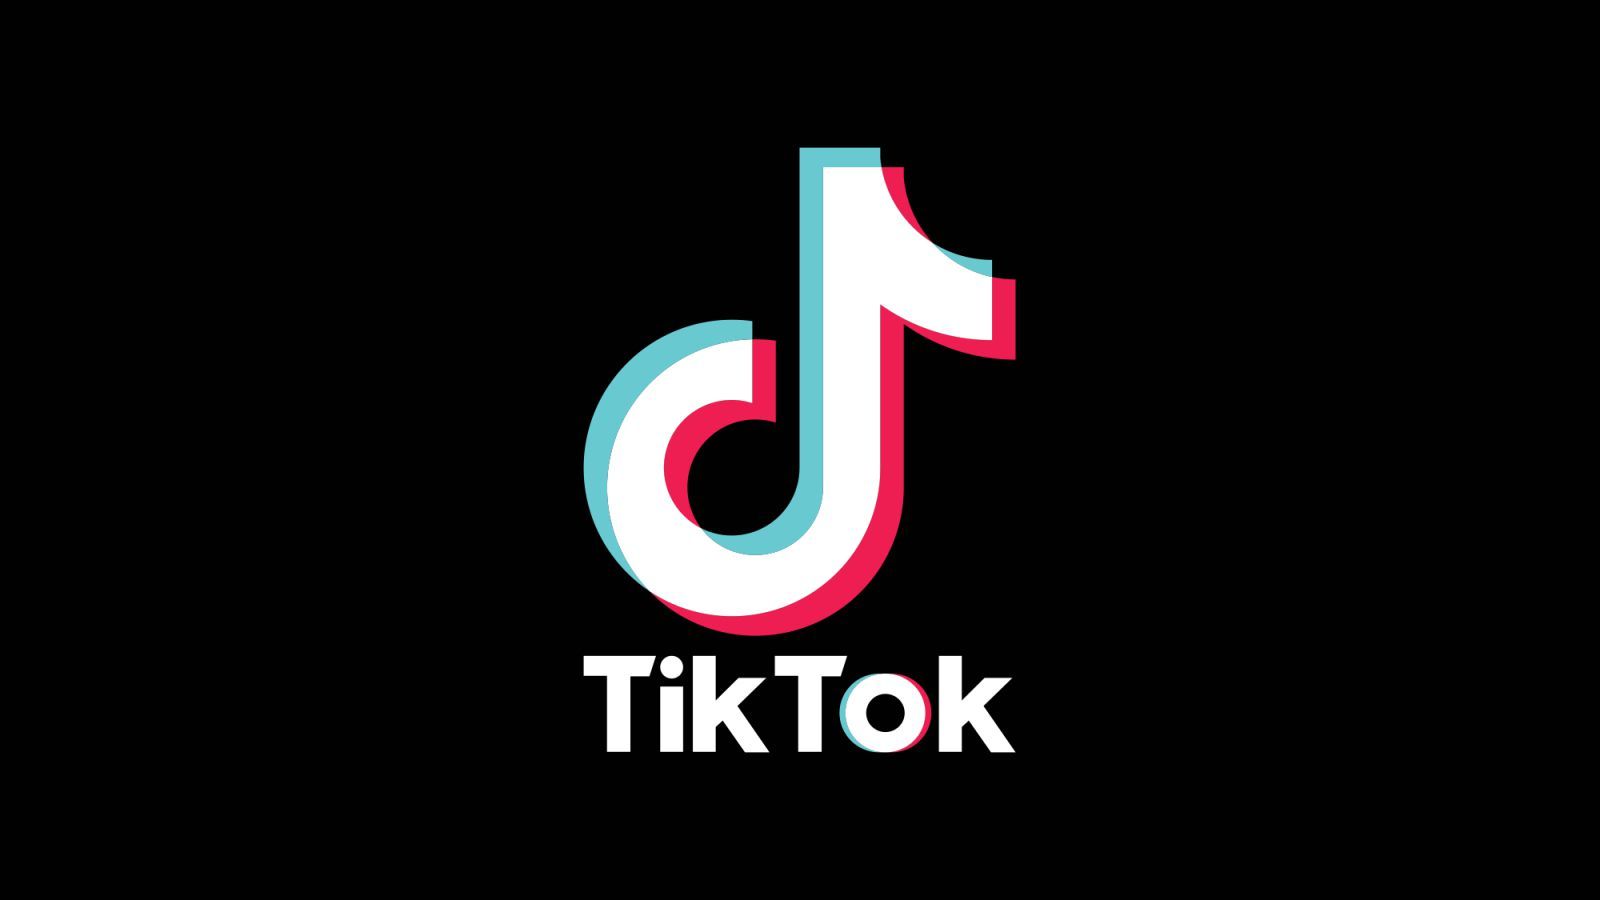 Tik tok solo va a ser apto para mayores de 10 años